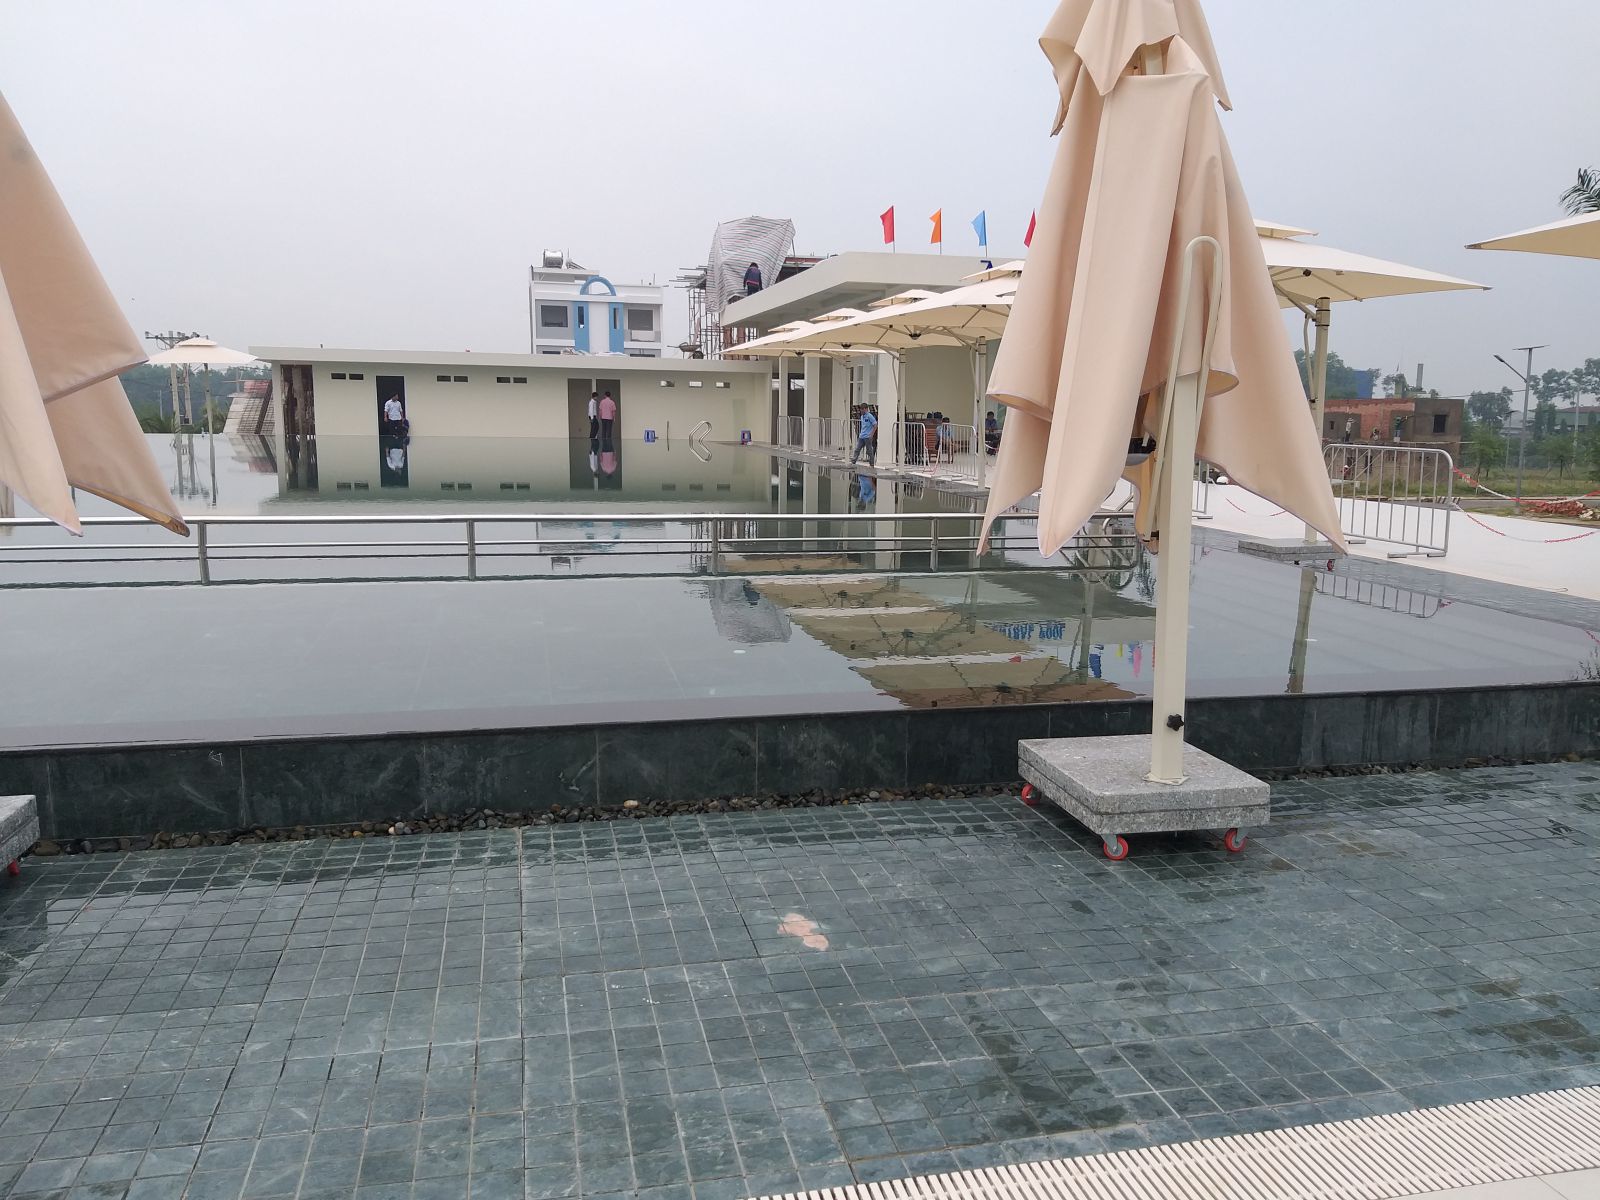 Công Trình: Dự Án Hồ Bơi kinh doanh Central Pool Tại Long Thành, Đồng Nai Hoàn Thành Năm 2016 Là Một Trong Những Công Trình Trọng Điểm Tạo Nên Thương Hiệu Cty Phúc Khang 